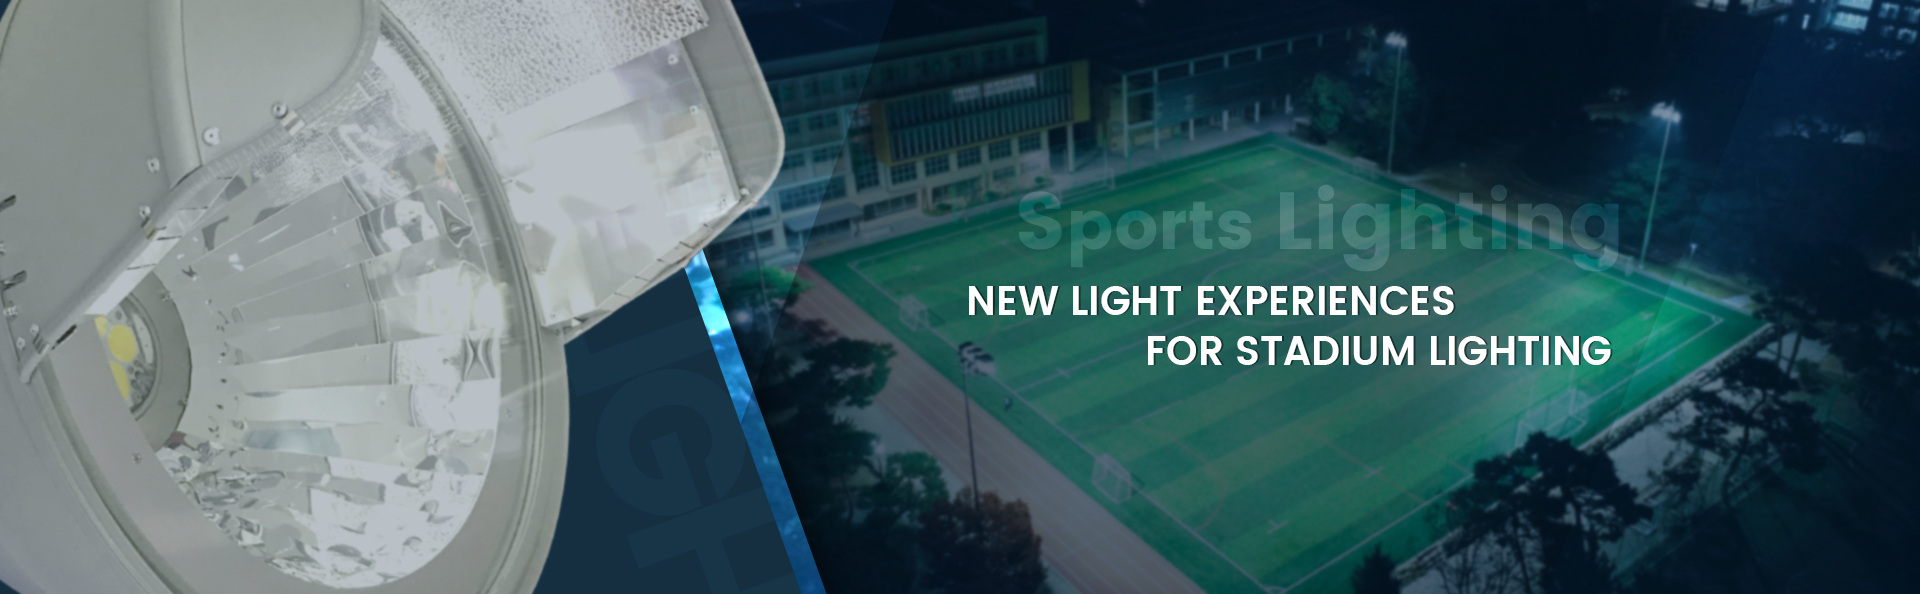 led lights for stadium